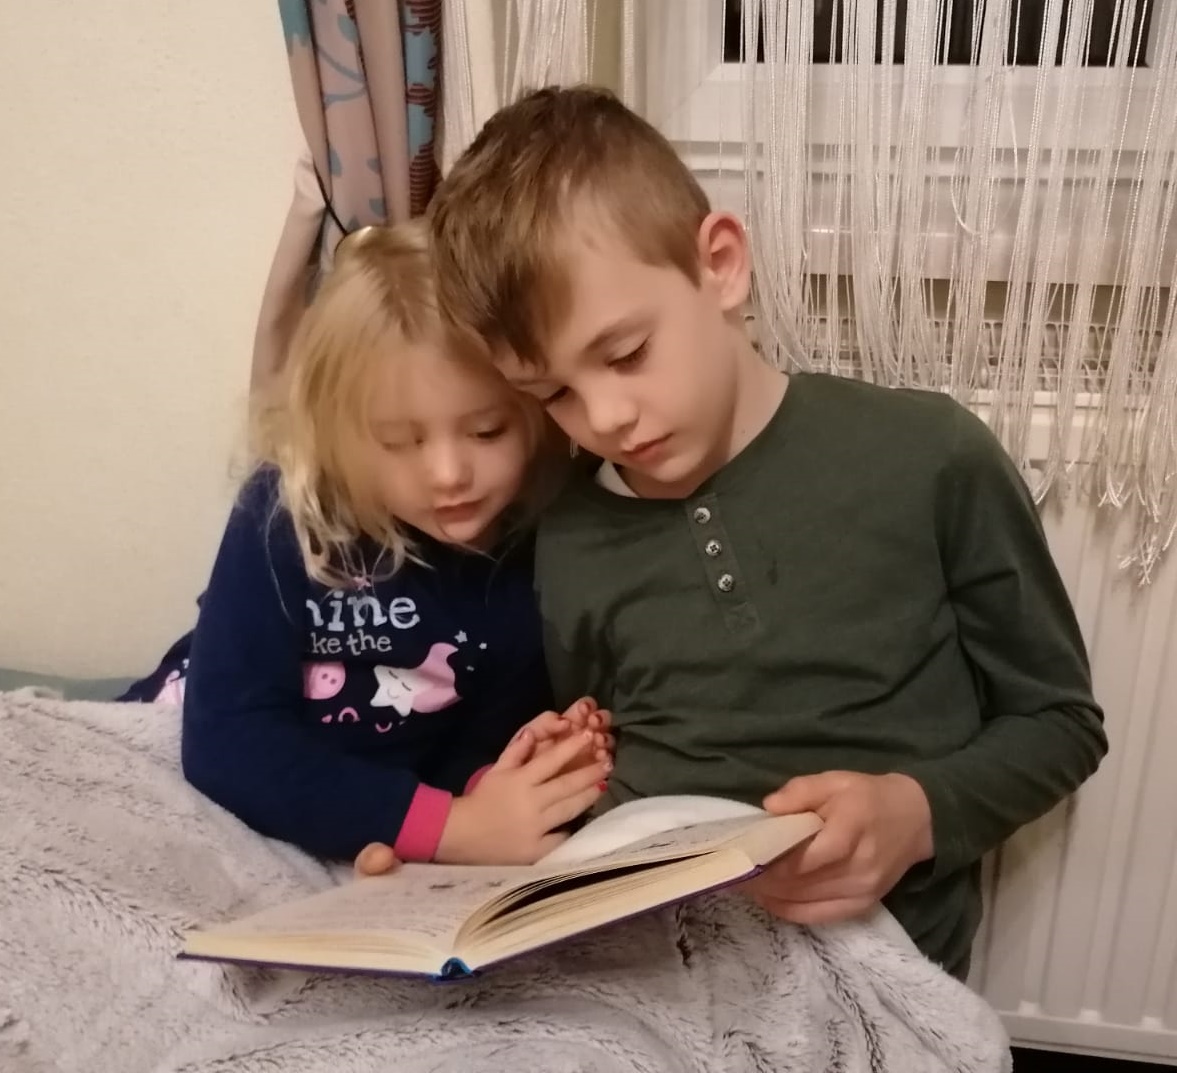 1 Mädchen (5 Jahre) und 1 Junge (ca. 8 Jahre) sitzen zusammen im Bett. Der Junge hält ein Buch in der Hand und es sieht aus, als würde er dem Mädchen vorlesen